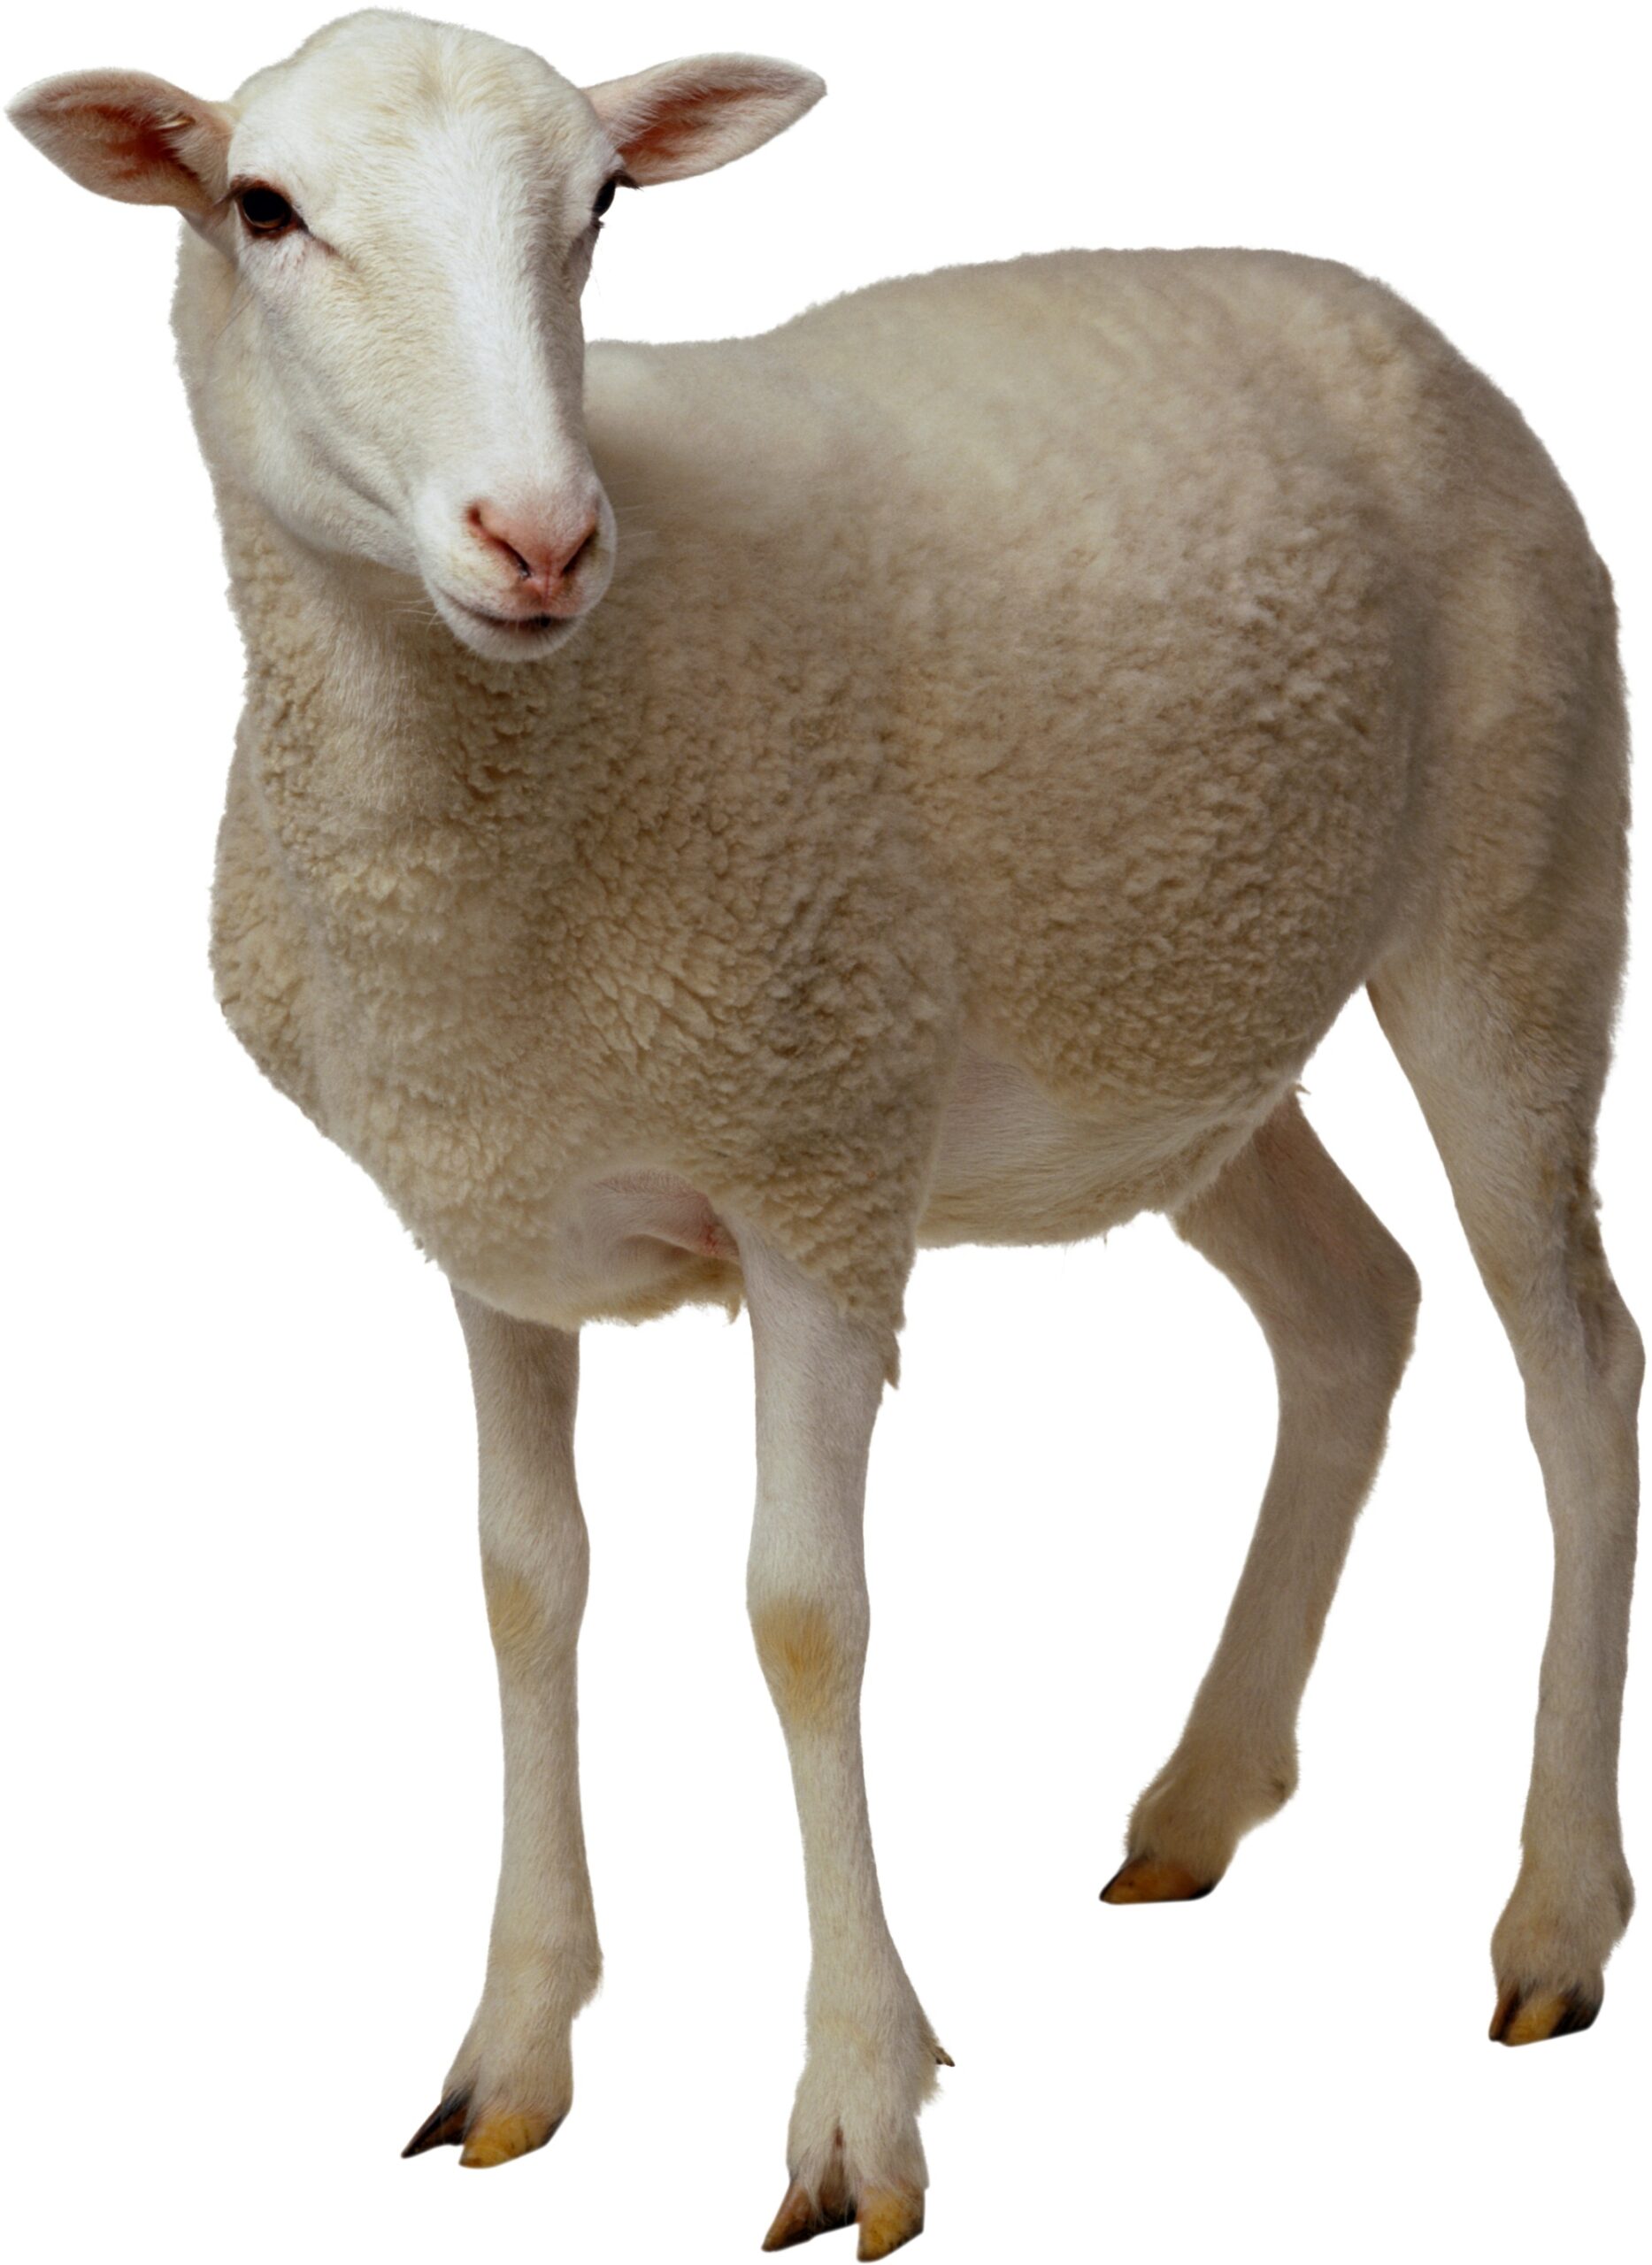 sheep images sanskrit scaled